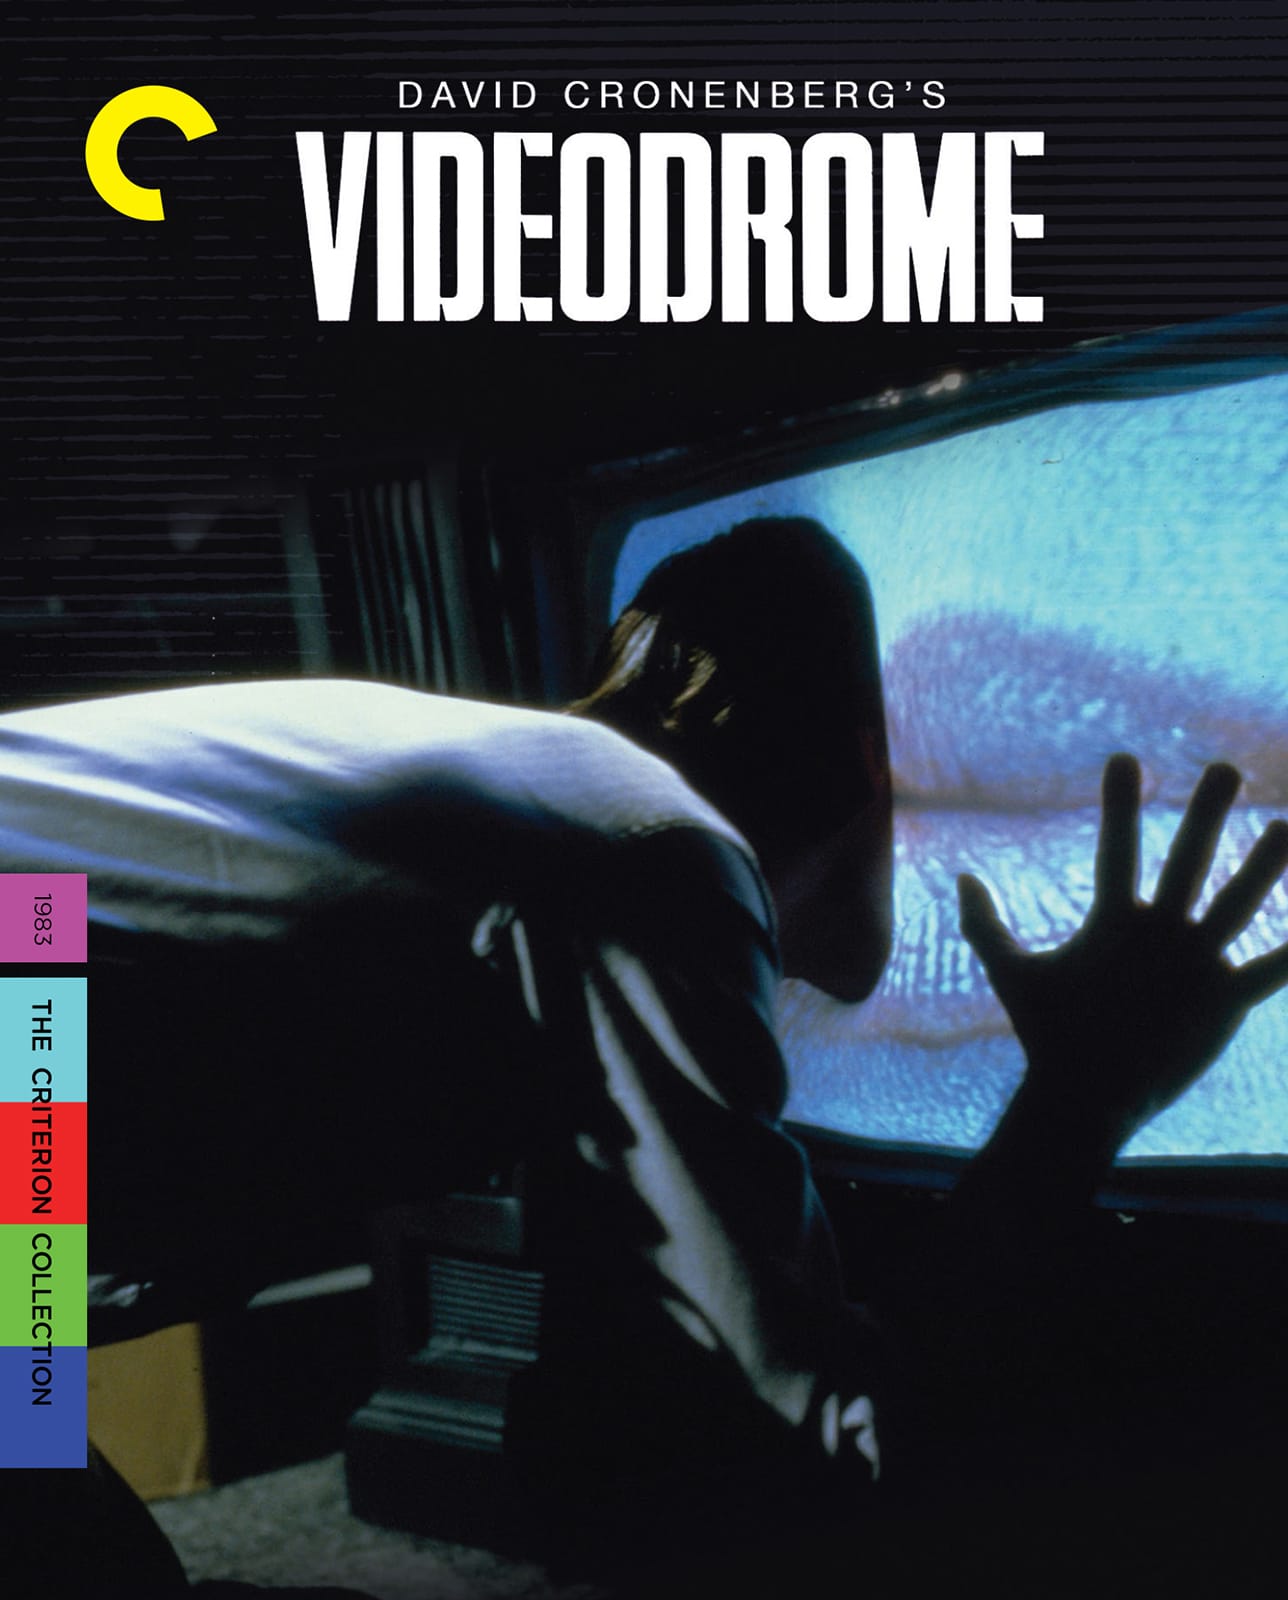 Videodrome - Darkside Records